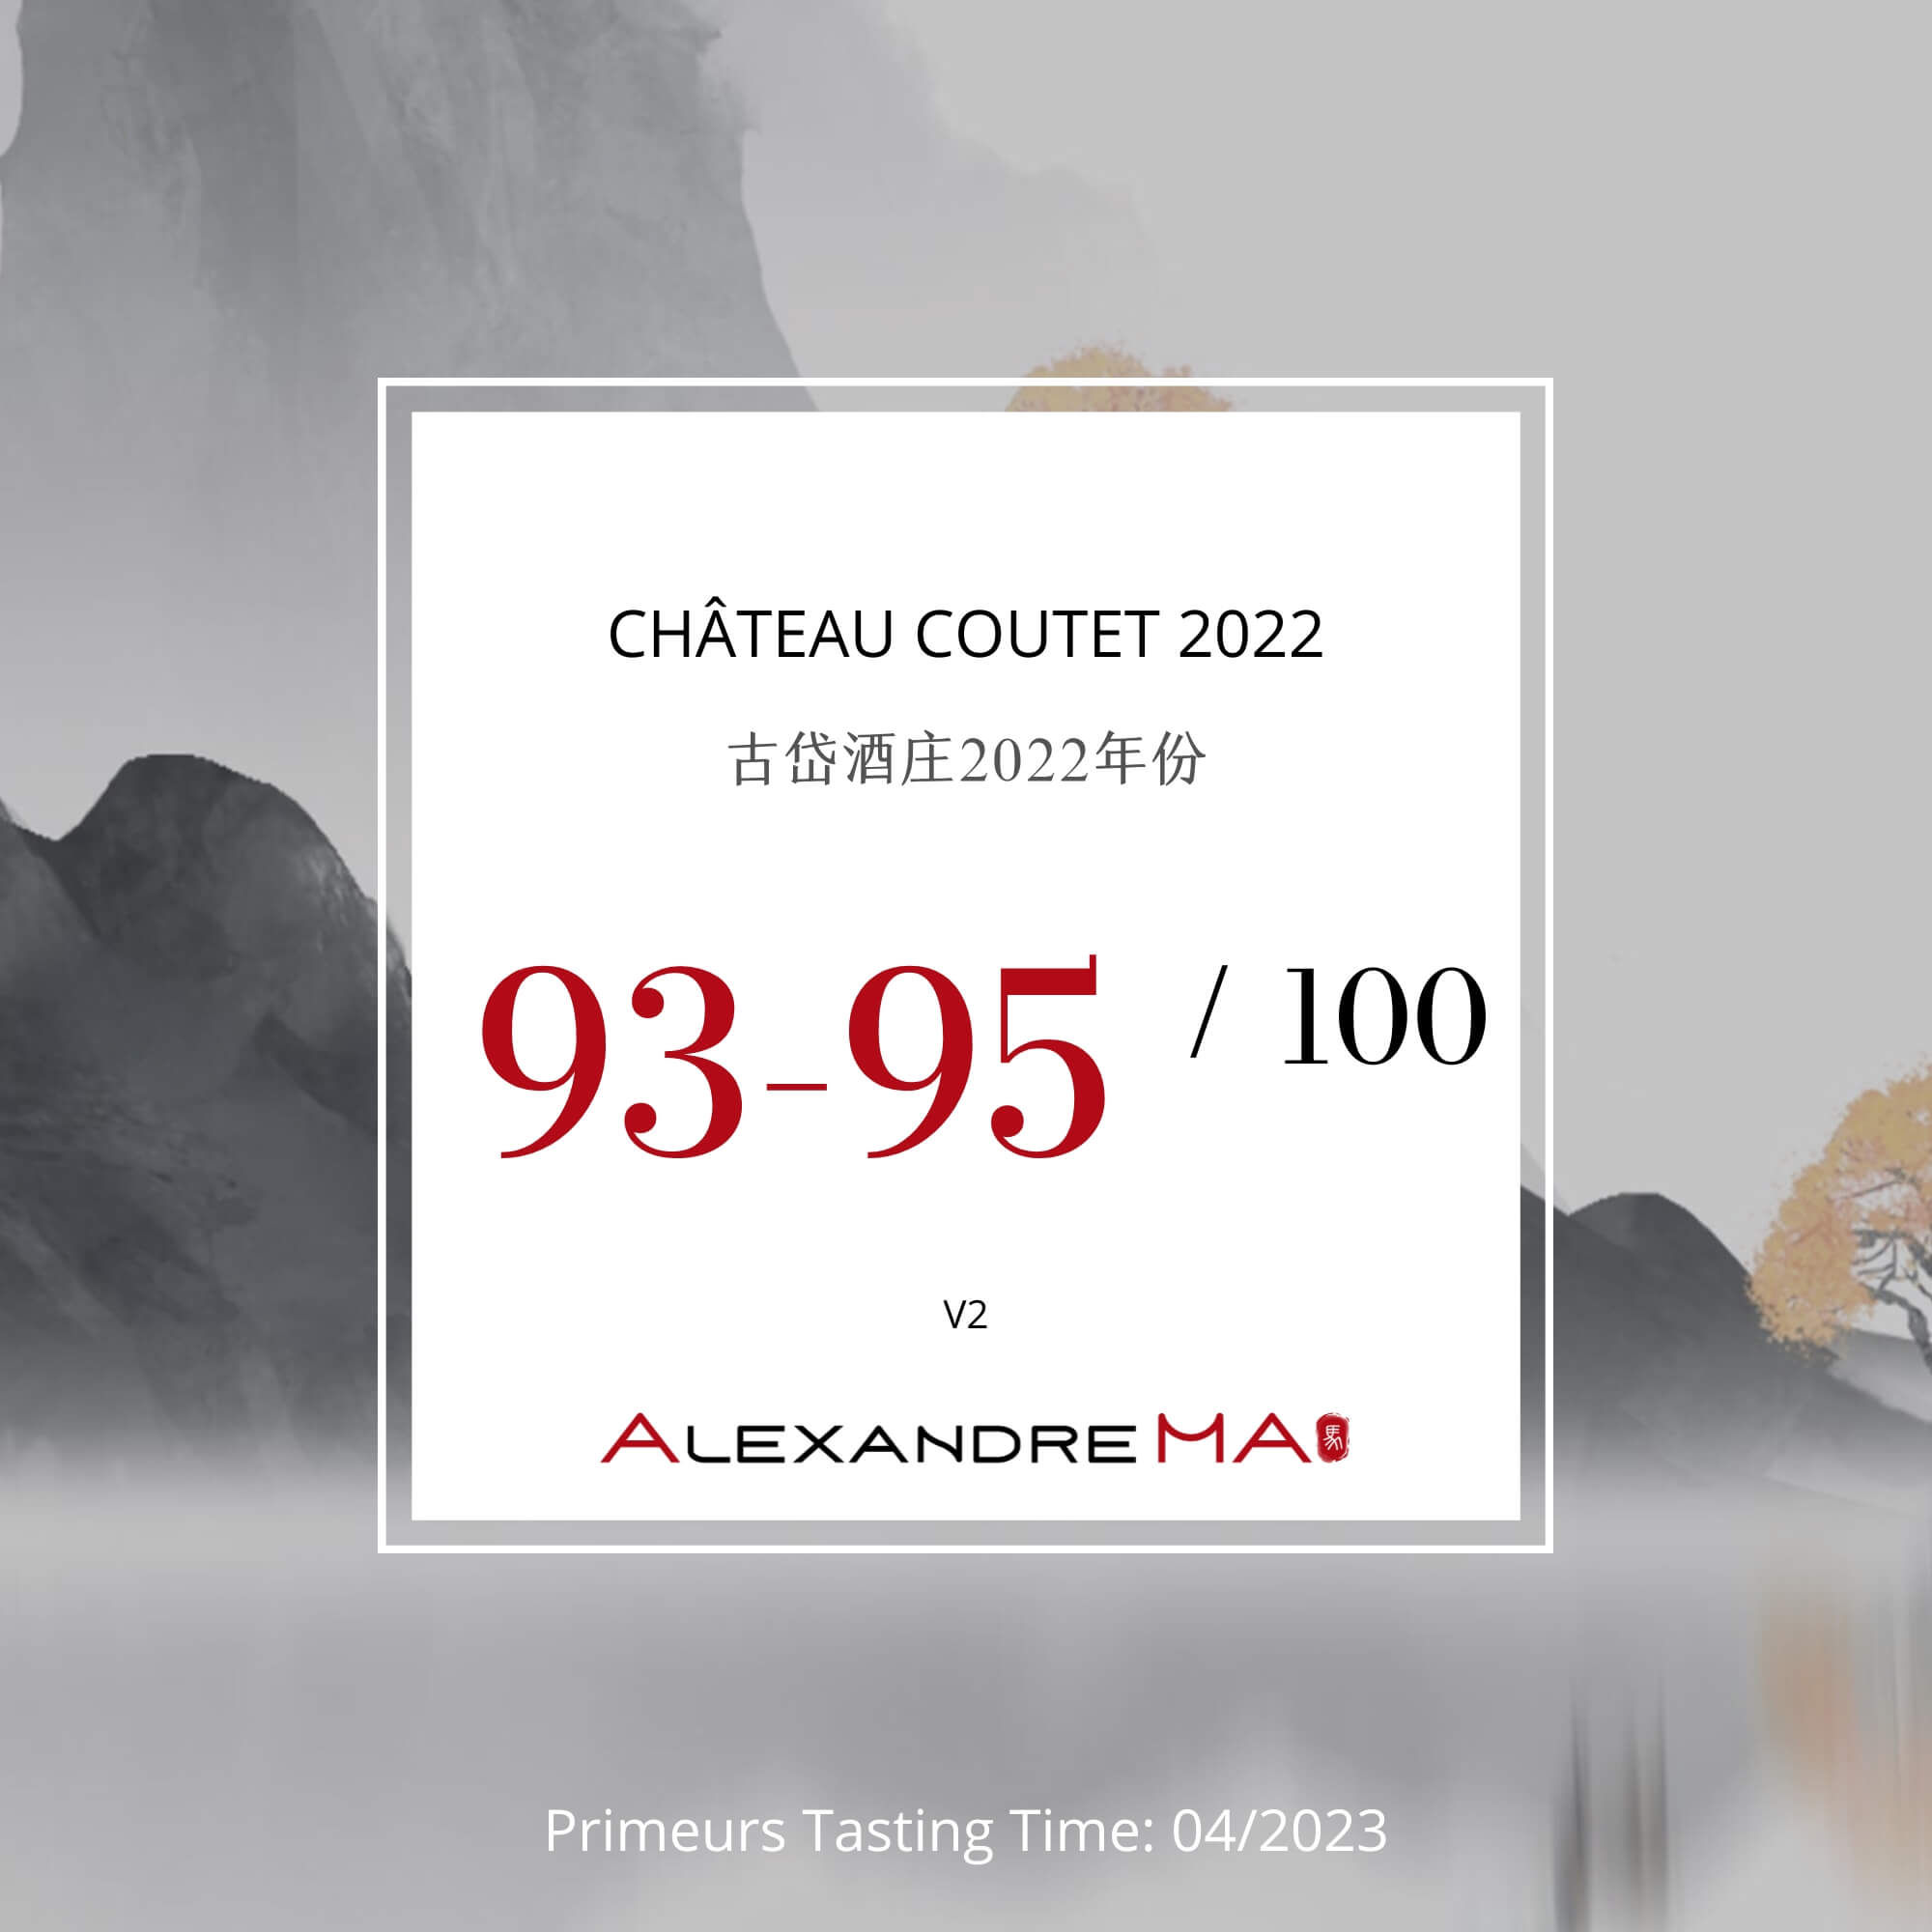 Château Coutet 2022 Primeurs 古岱酒庄 - Alexandre Ma